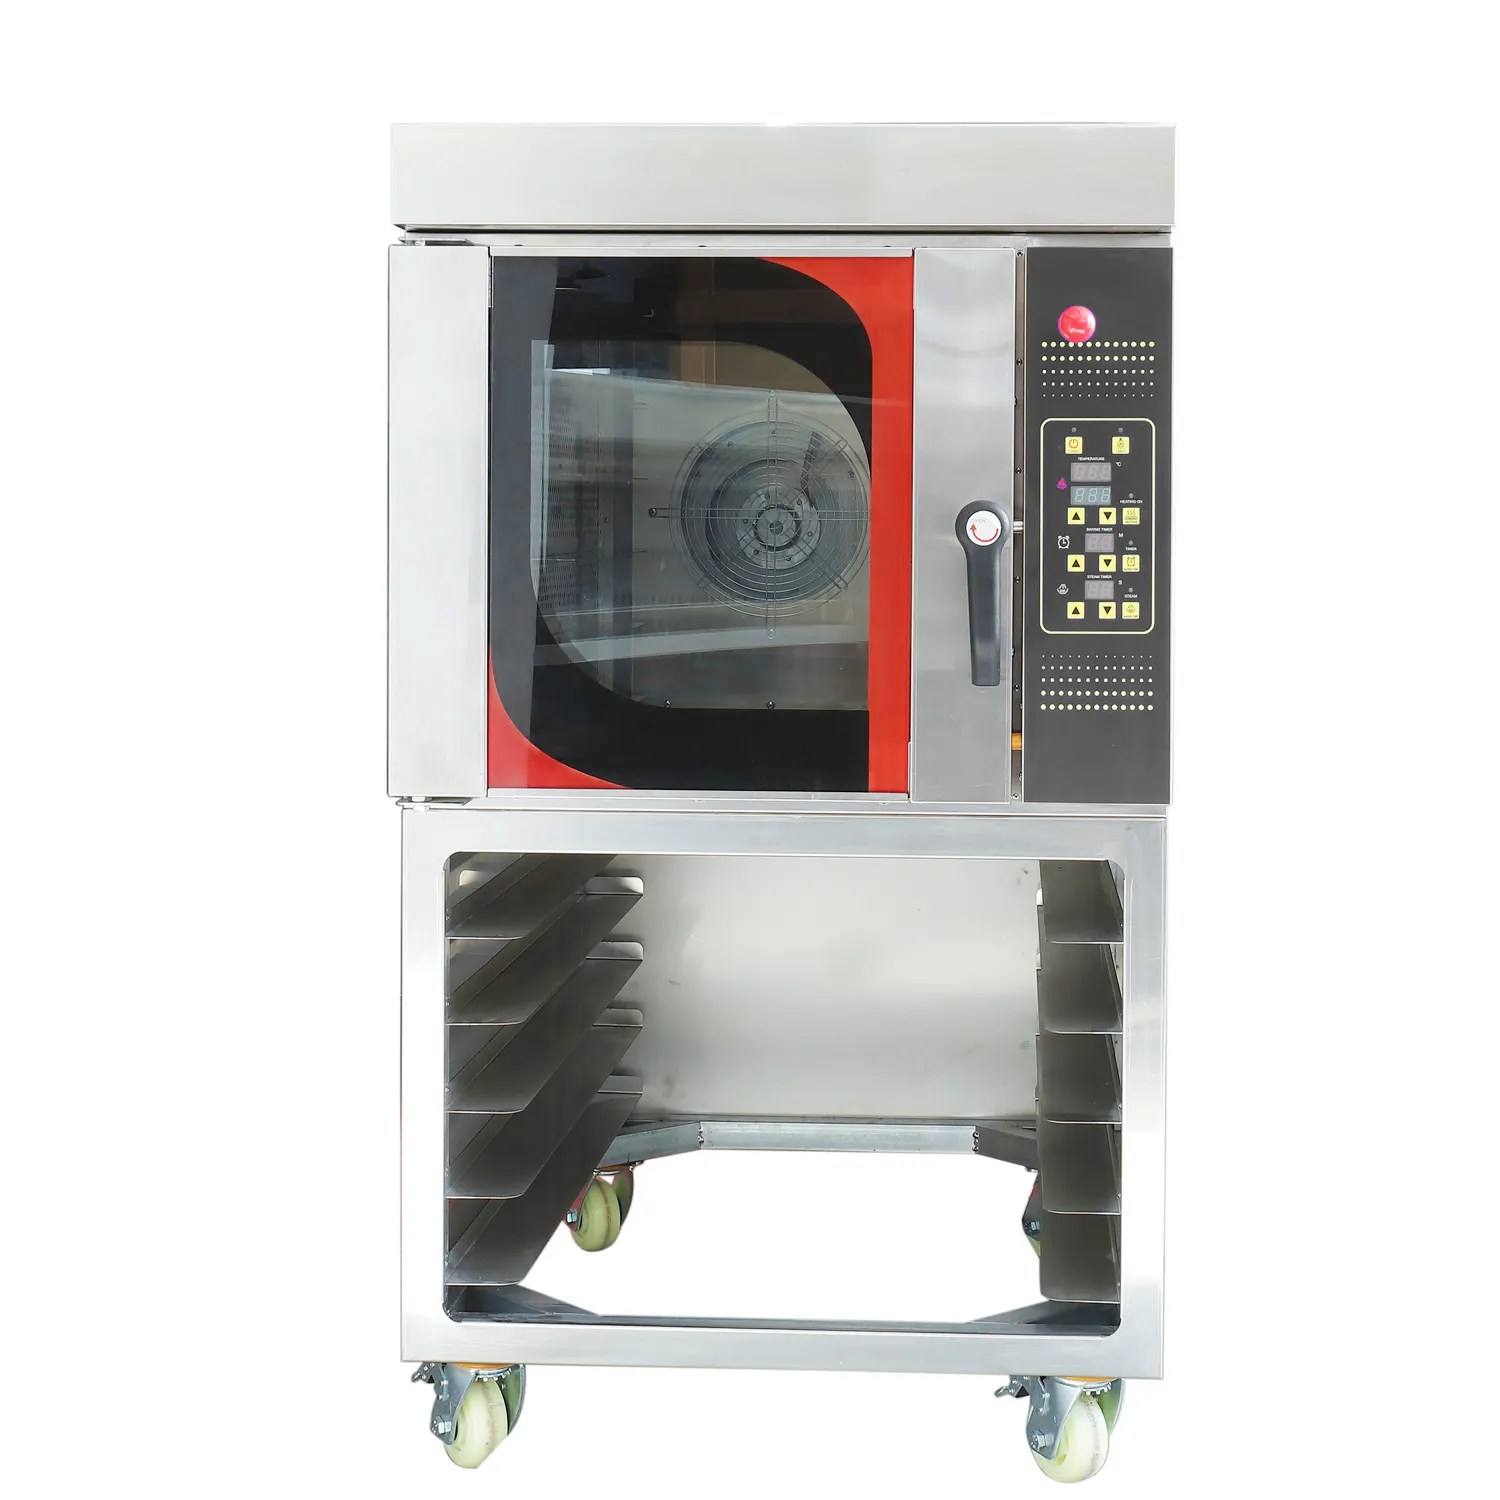 Astar bom venda quente convecção assar forno com temporizador máquina de pão vapor função gás 5 bandejas